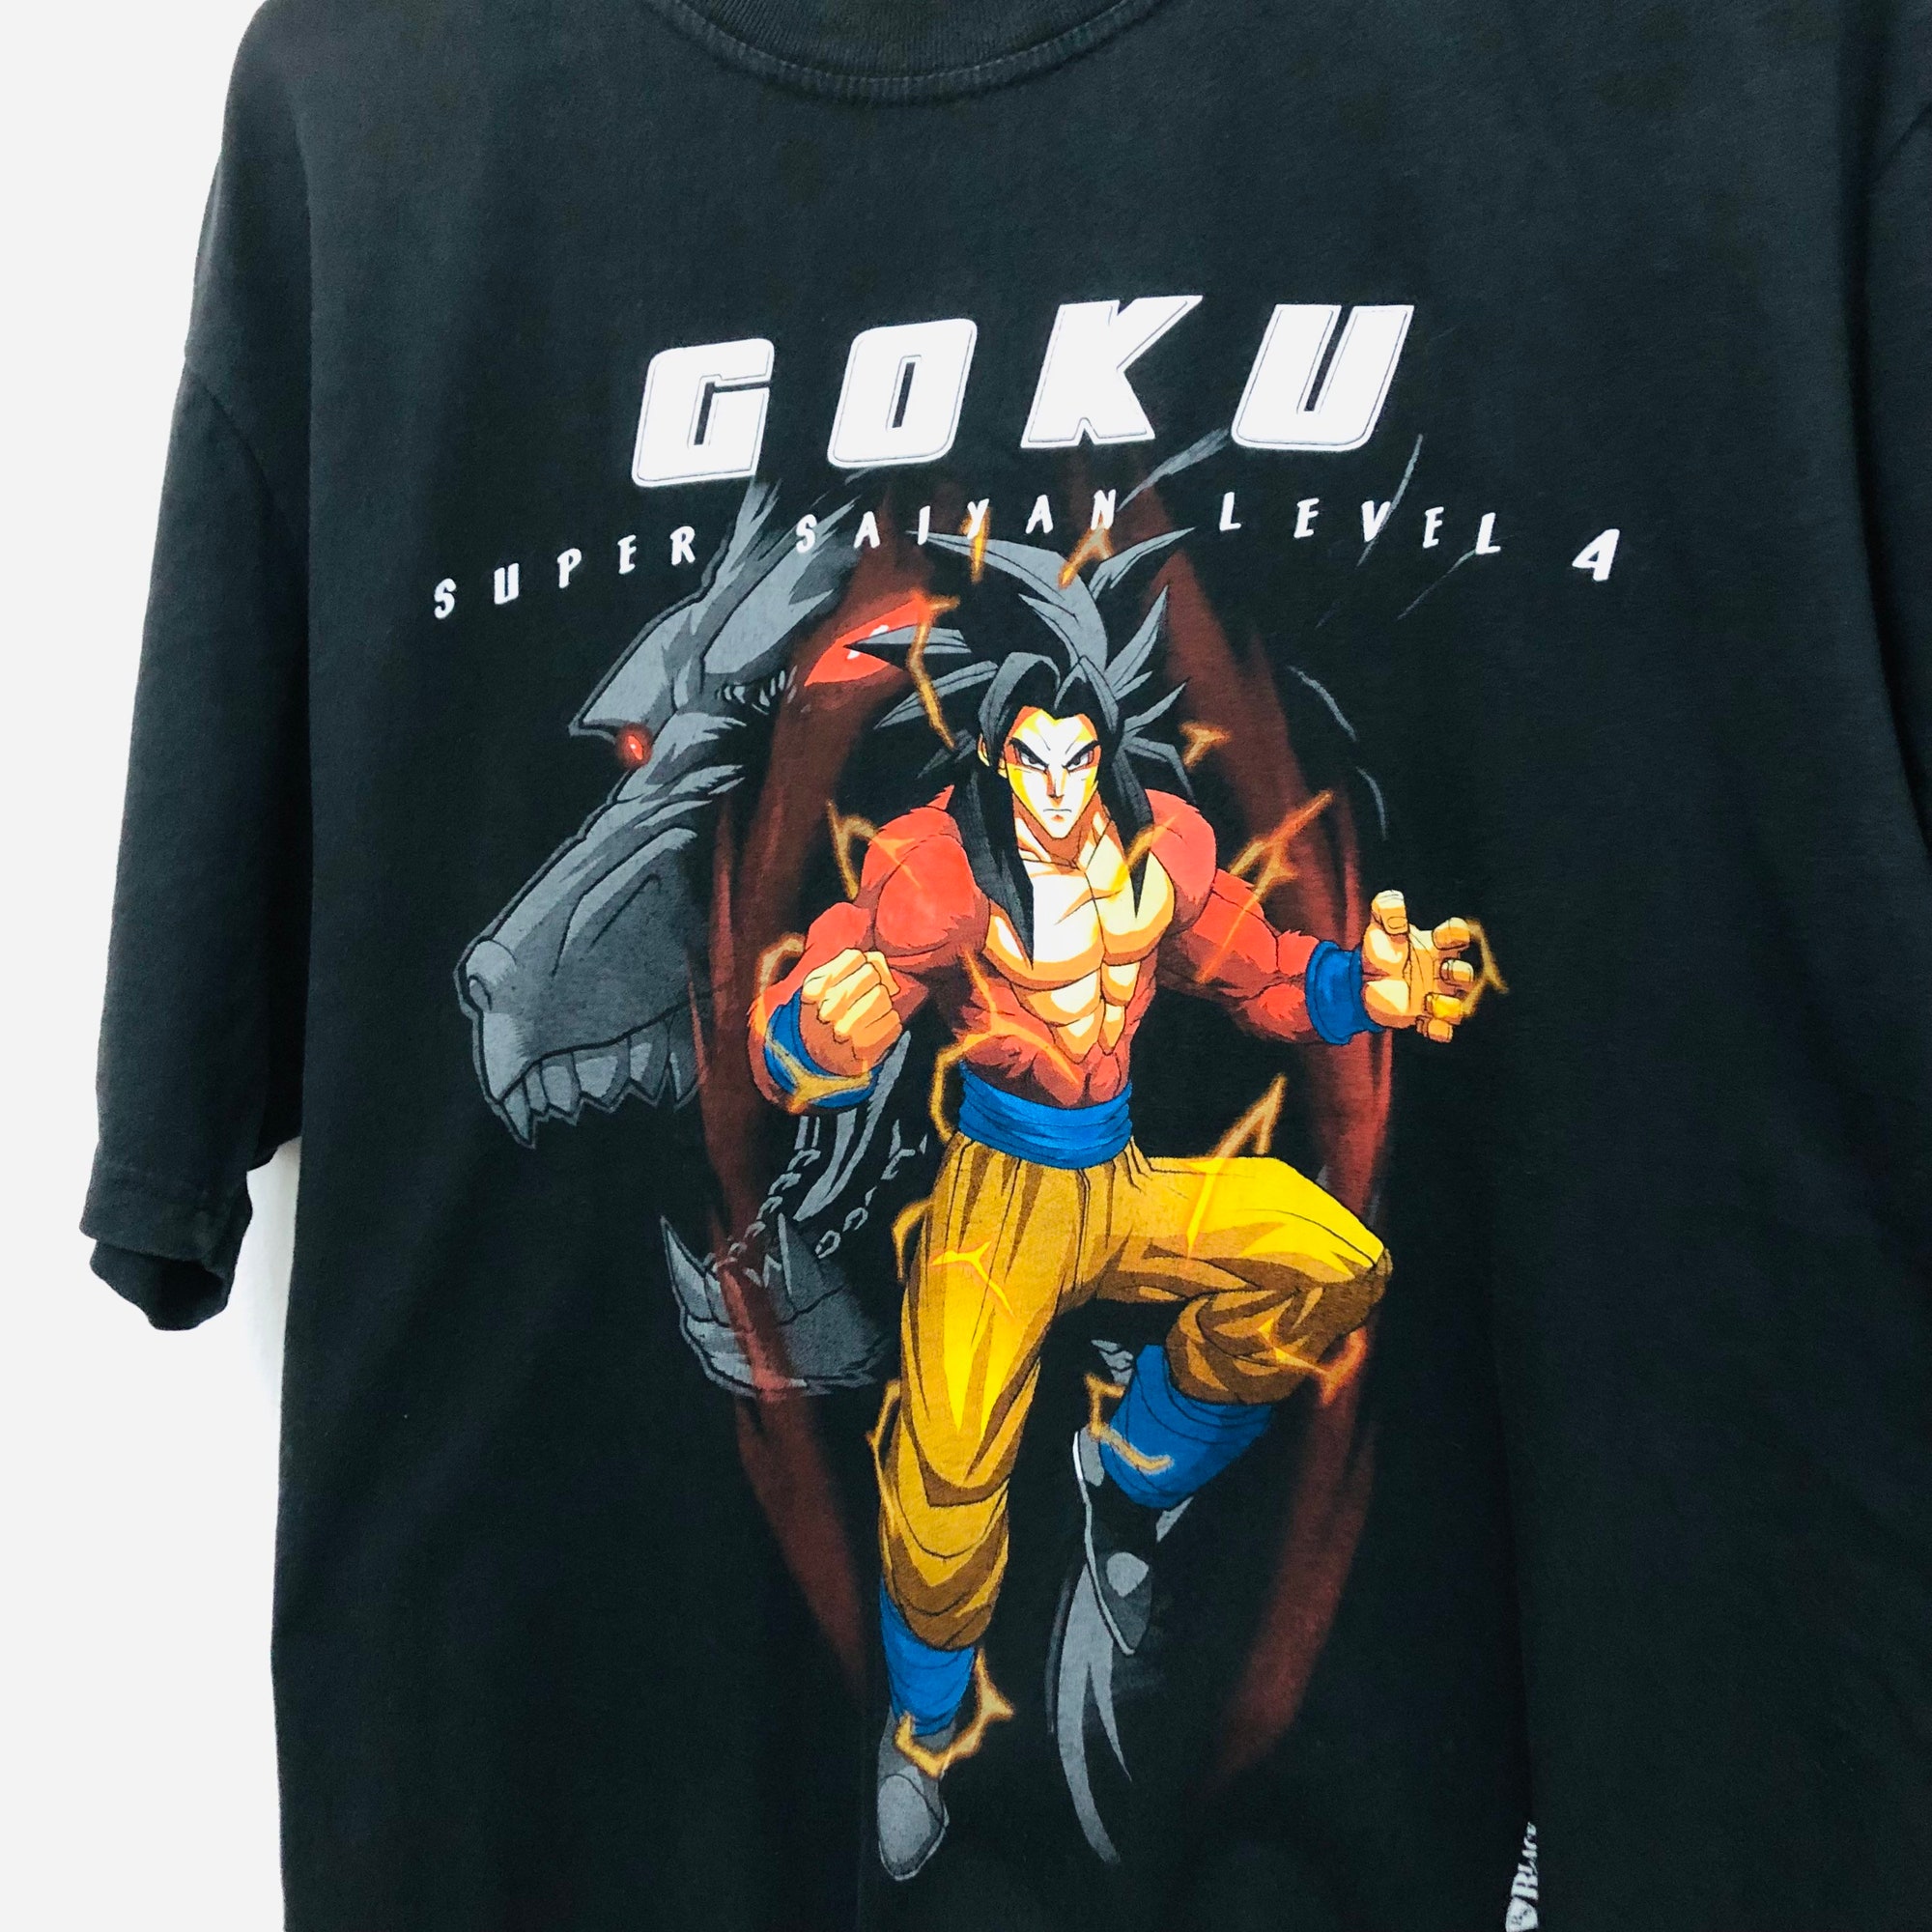 Dragon Ball Z Goku T-shirt Super saiyan level